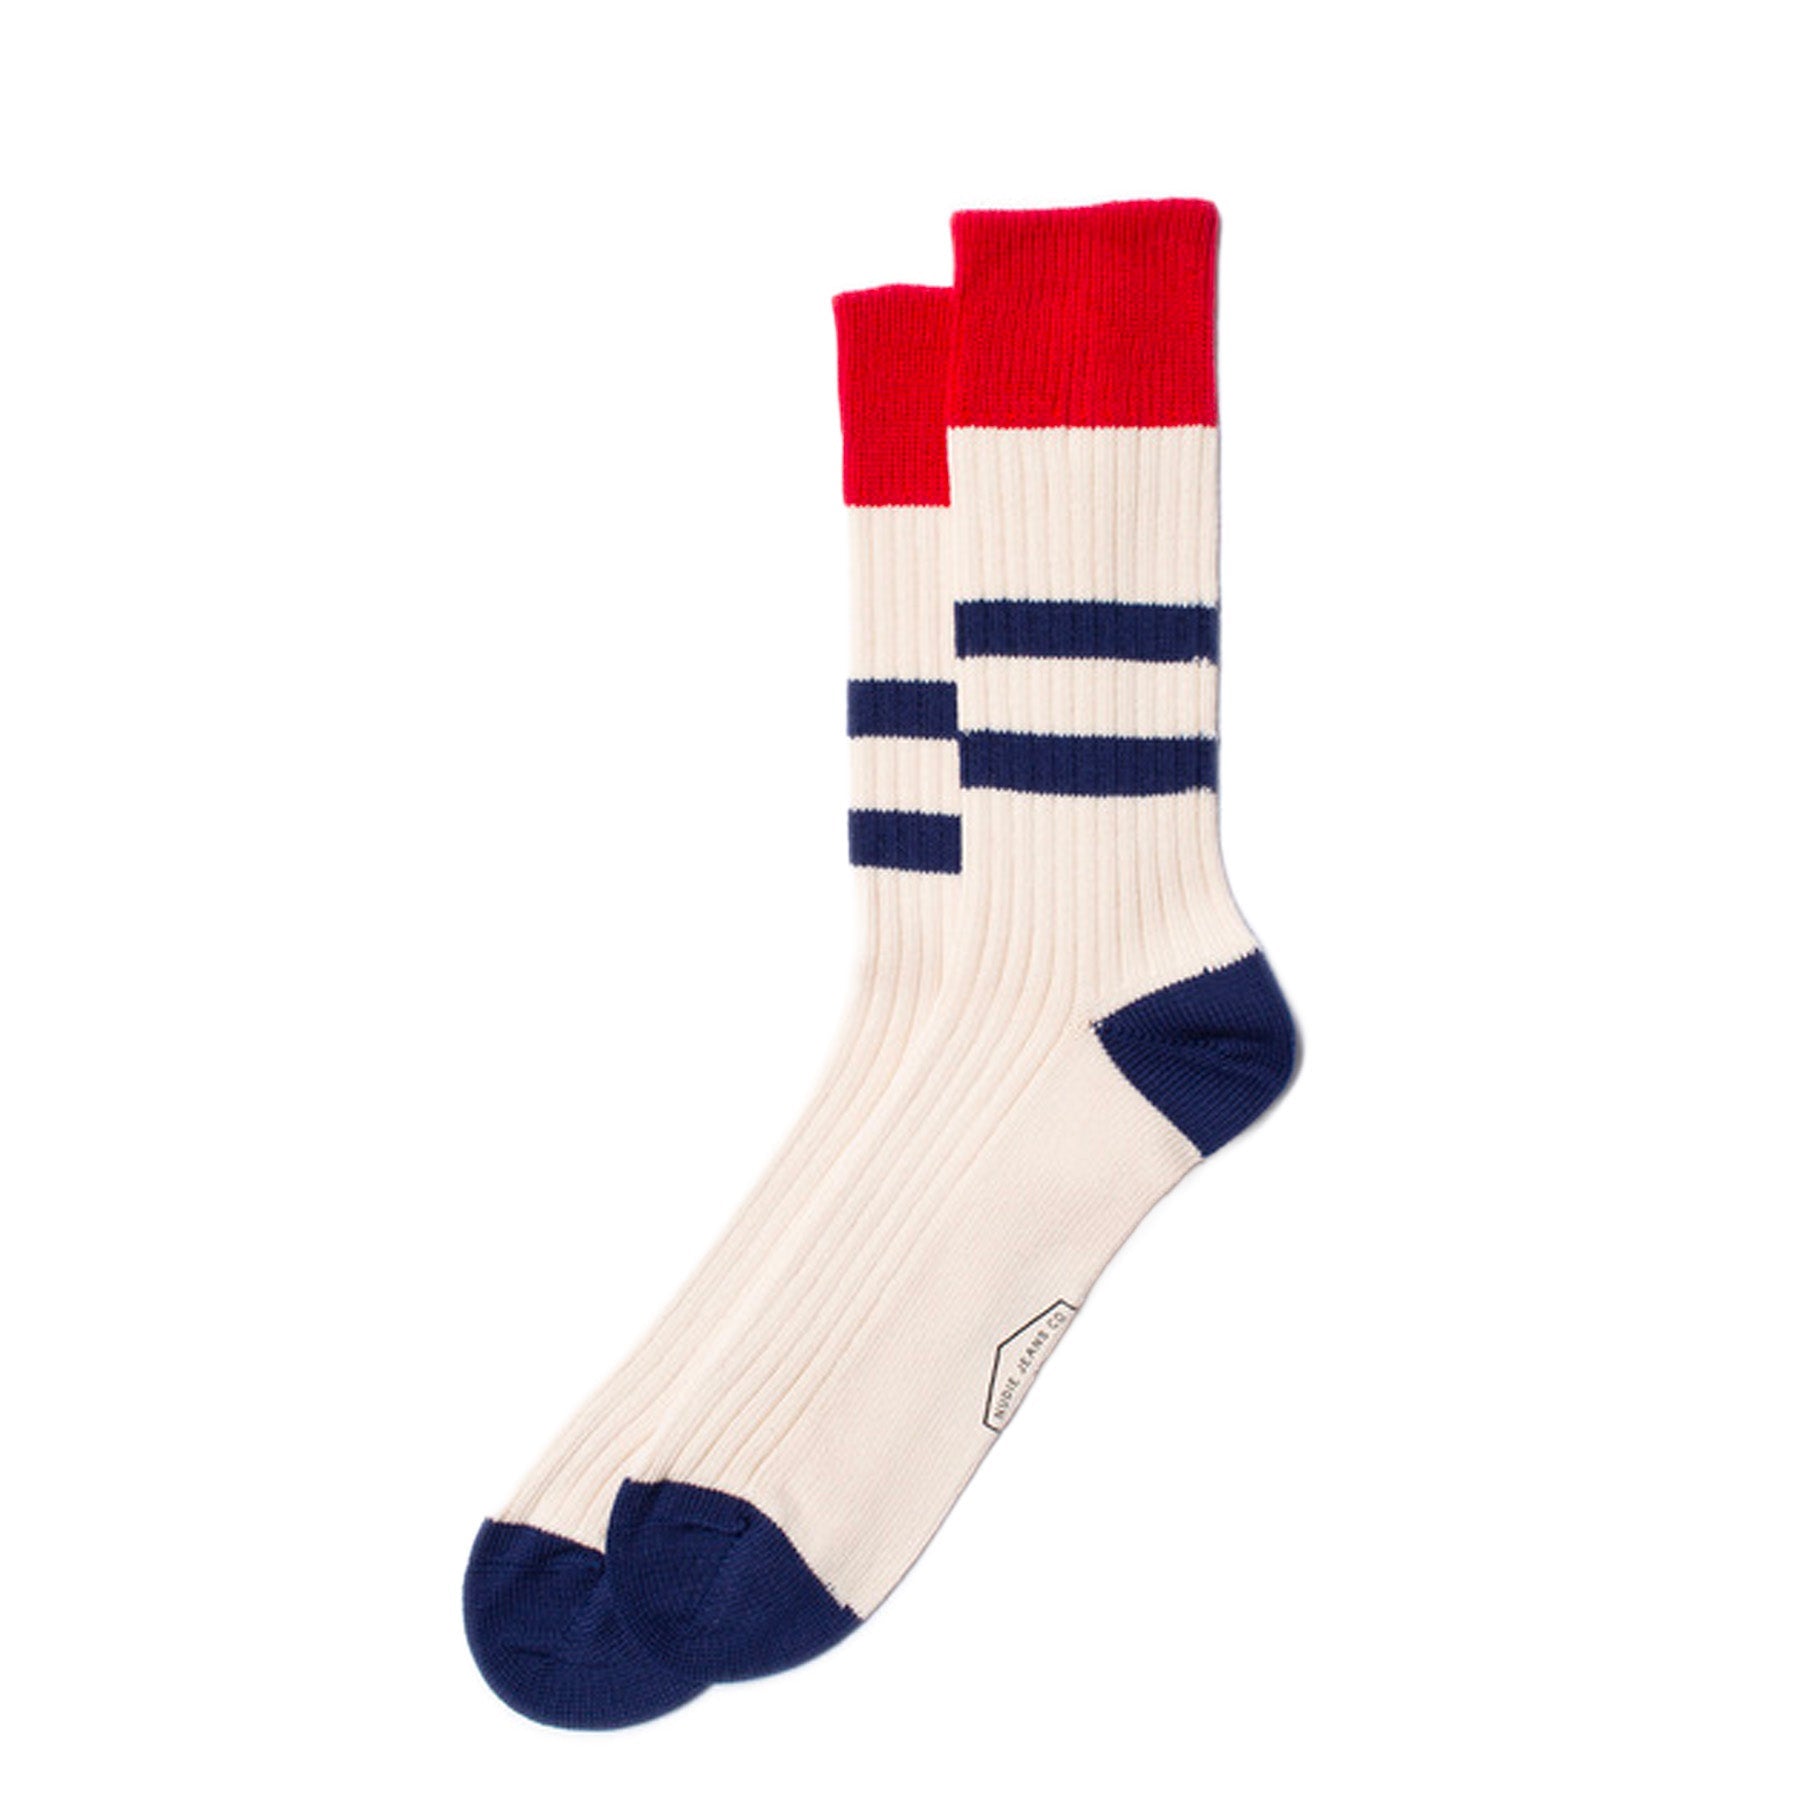 Nudie - RIB Socks - Off White